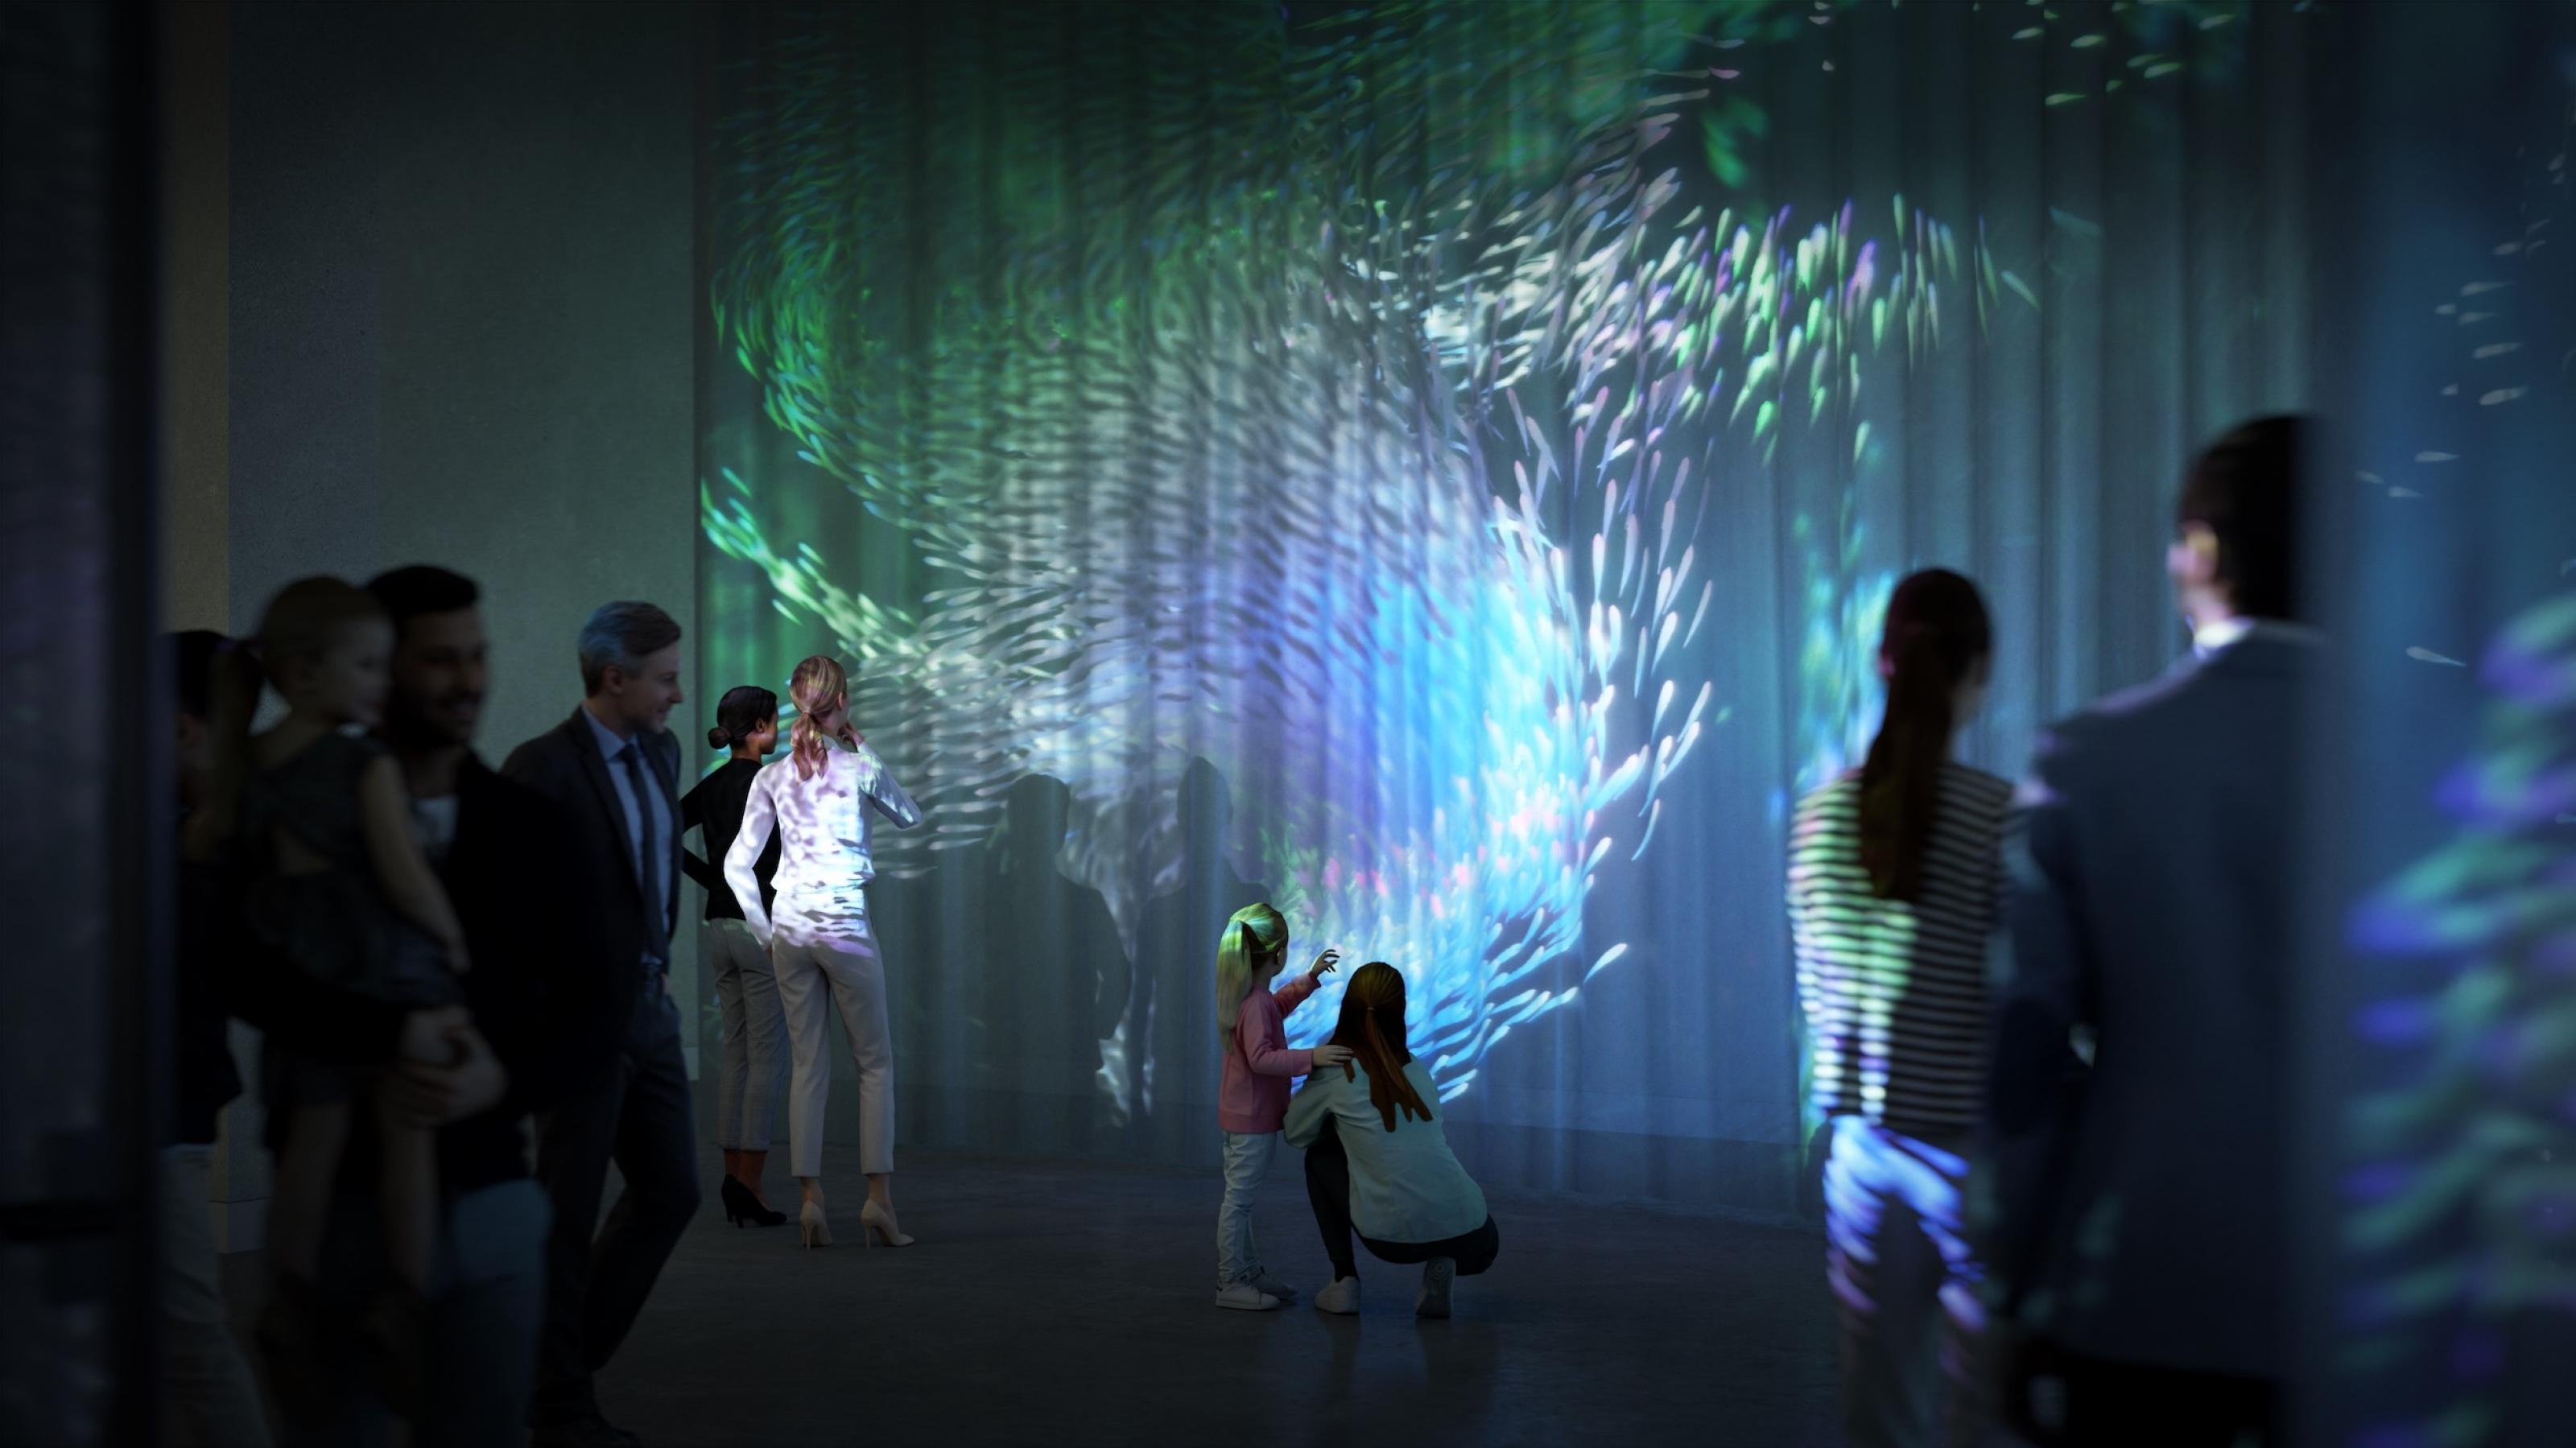 Das Bild zeigt den Entwurf eines Ausstellungsraums von „Nach der Natur“. Menschen stehen vor einer Projektion mit Fischen und abstrakten organischen Formen.